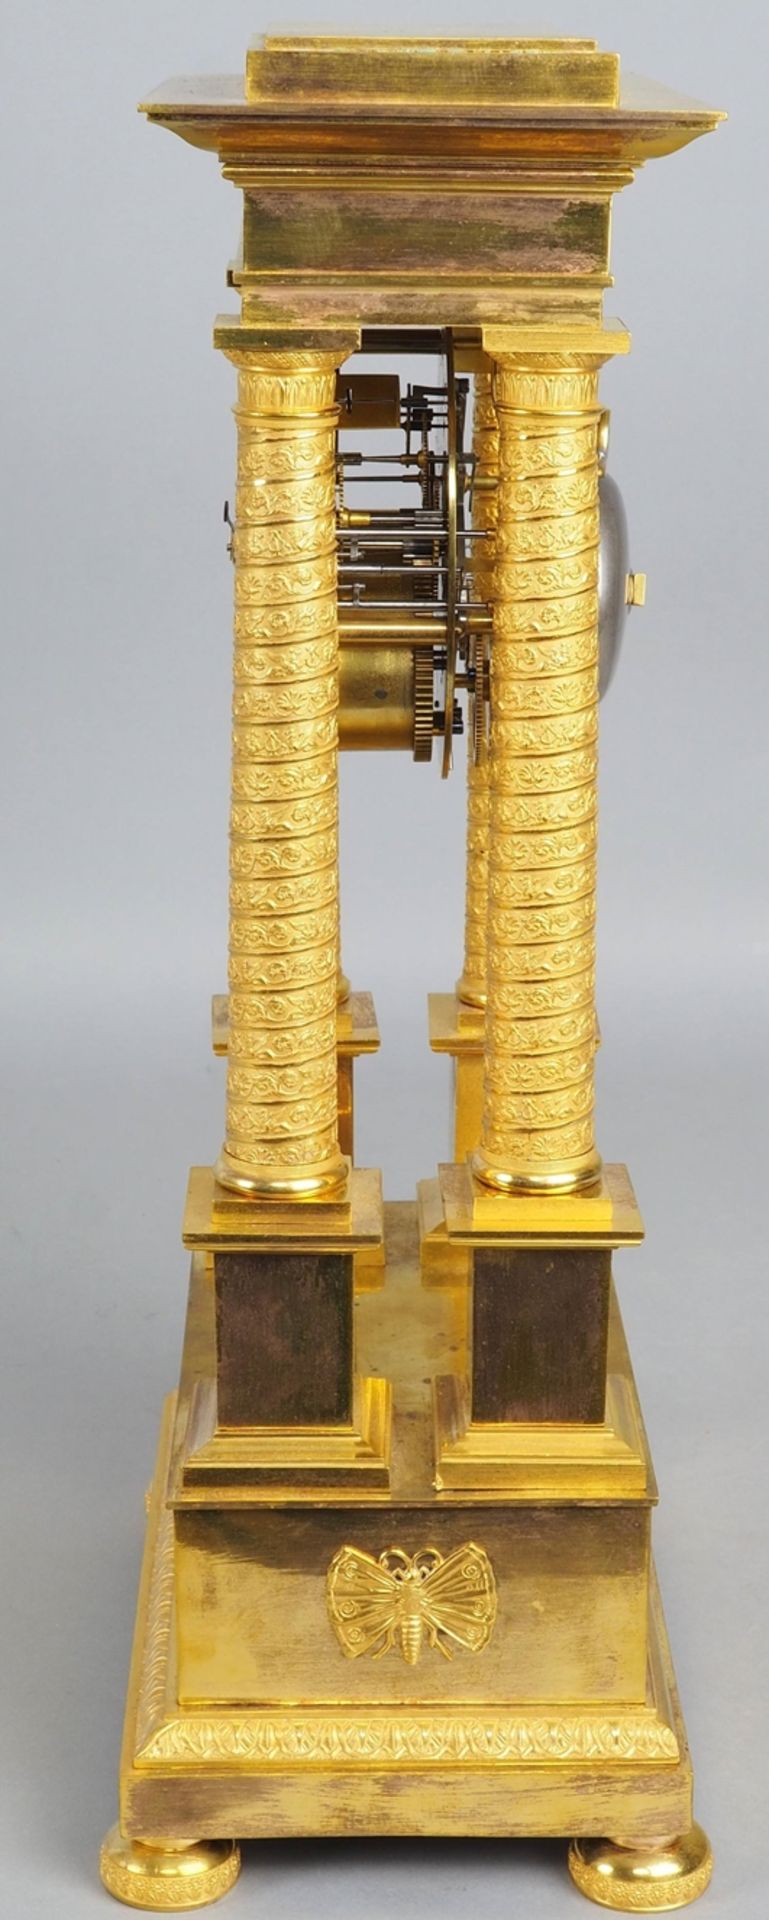 Feuervergoldete Empire-Portaluhr, um 1800, Bronze - Bild 4 aus 8